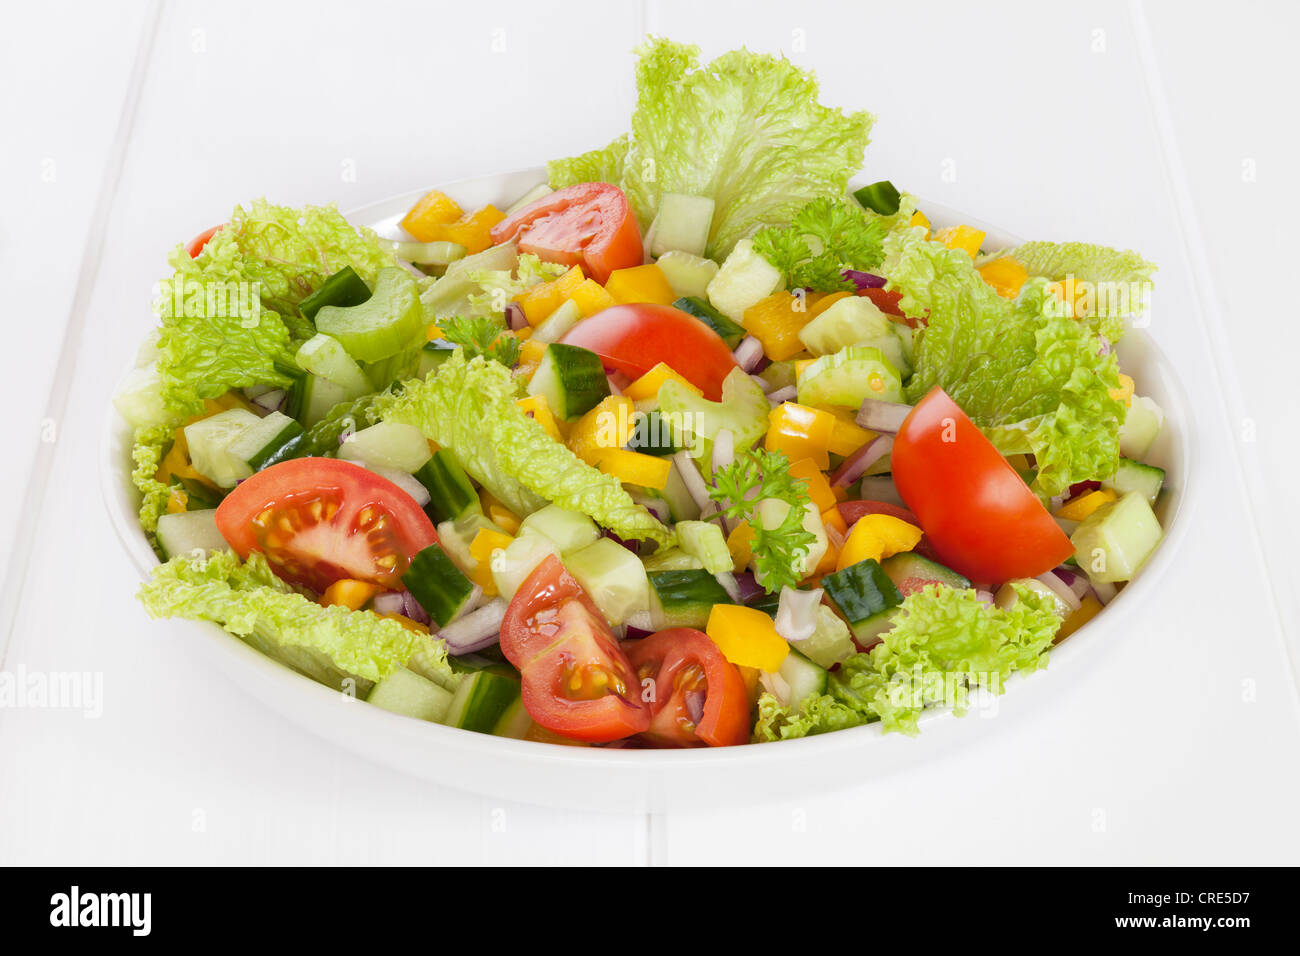 Una ciotola di fresca insalata mista con lattuga, cetriolo, pomodoro, cipolla rossa, gialla capsicum,sedano, prezzemolo. Foto Stock